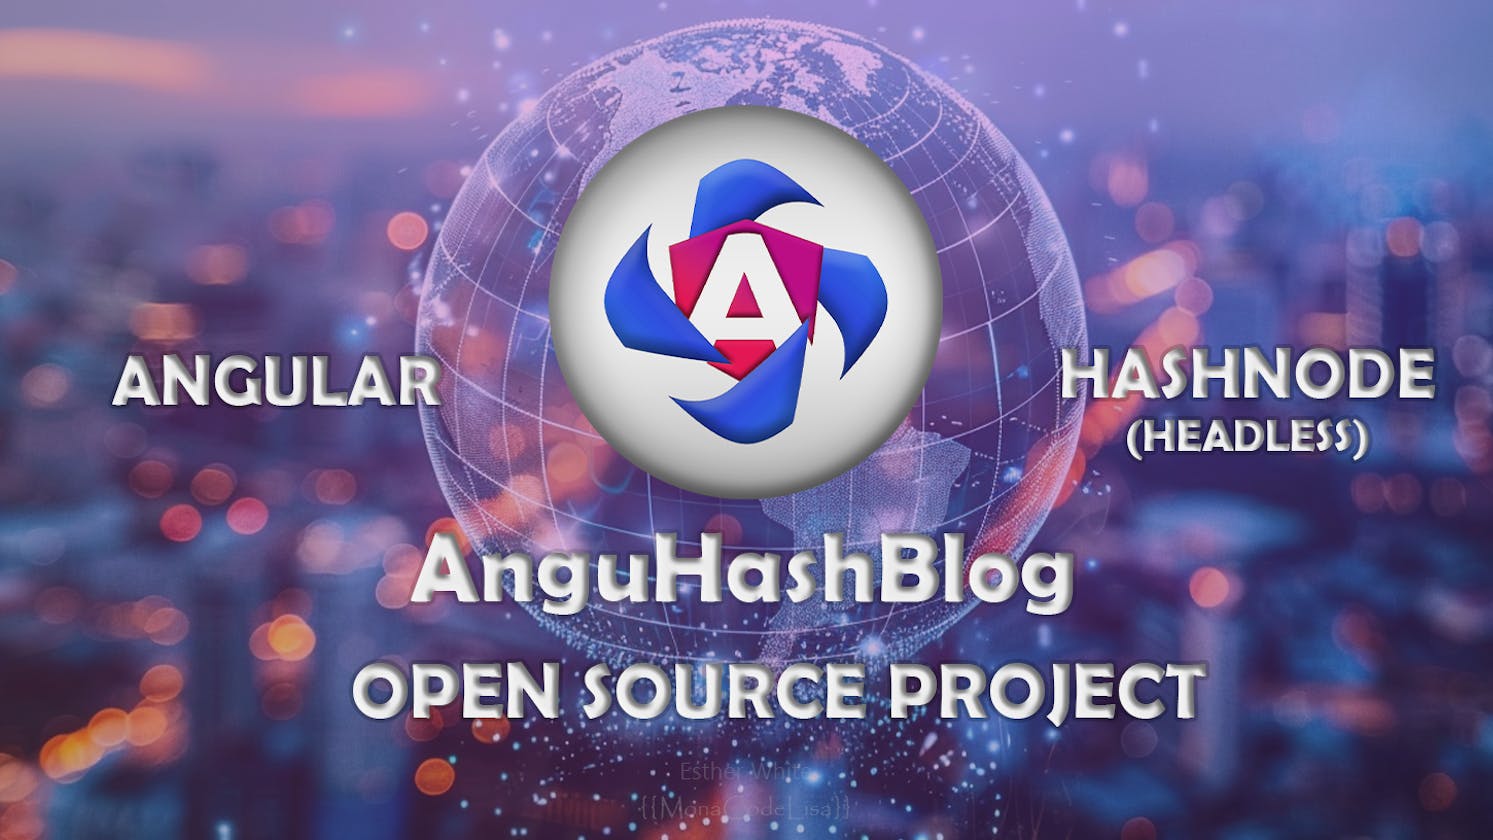 AnguHashBlog - Open Source Project